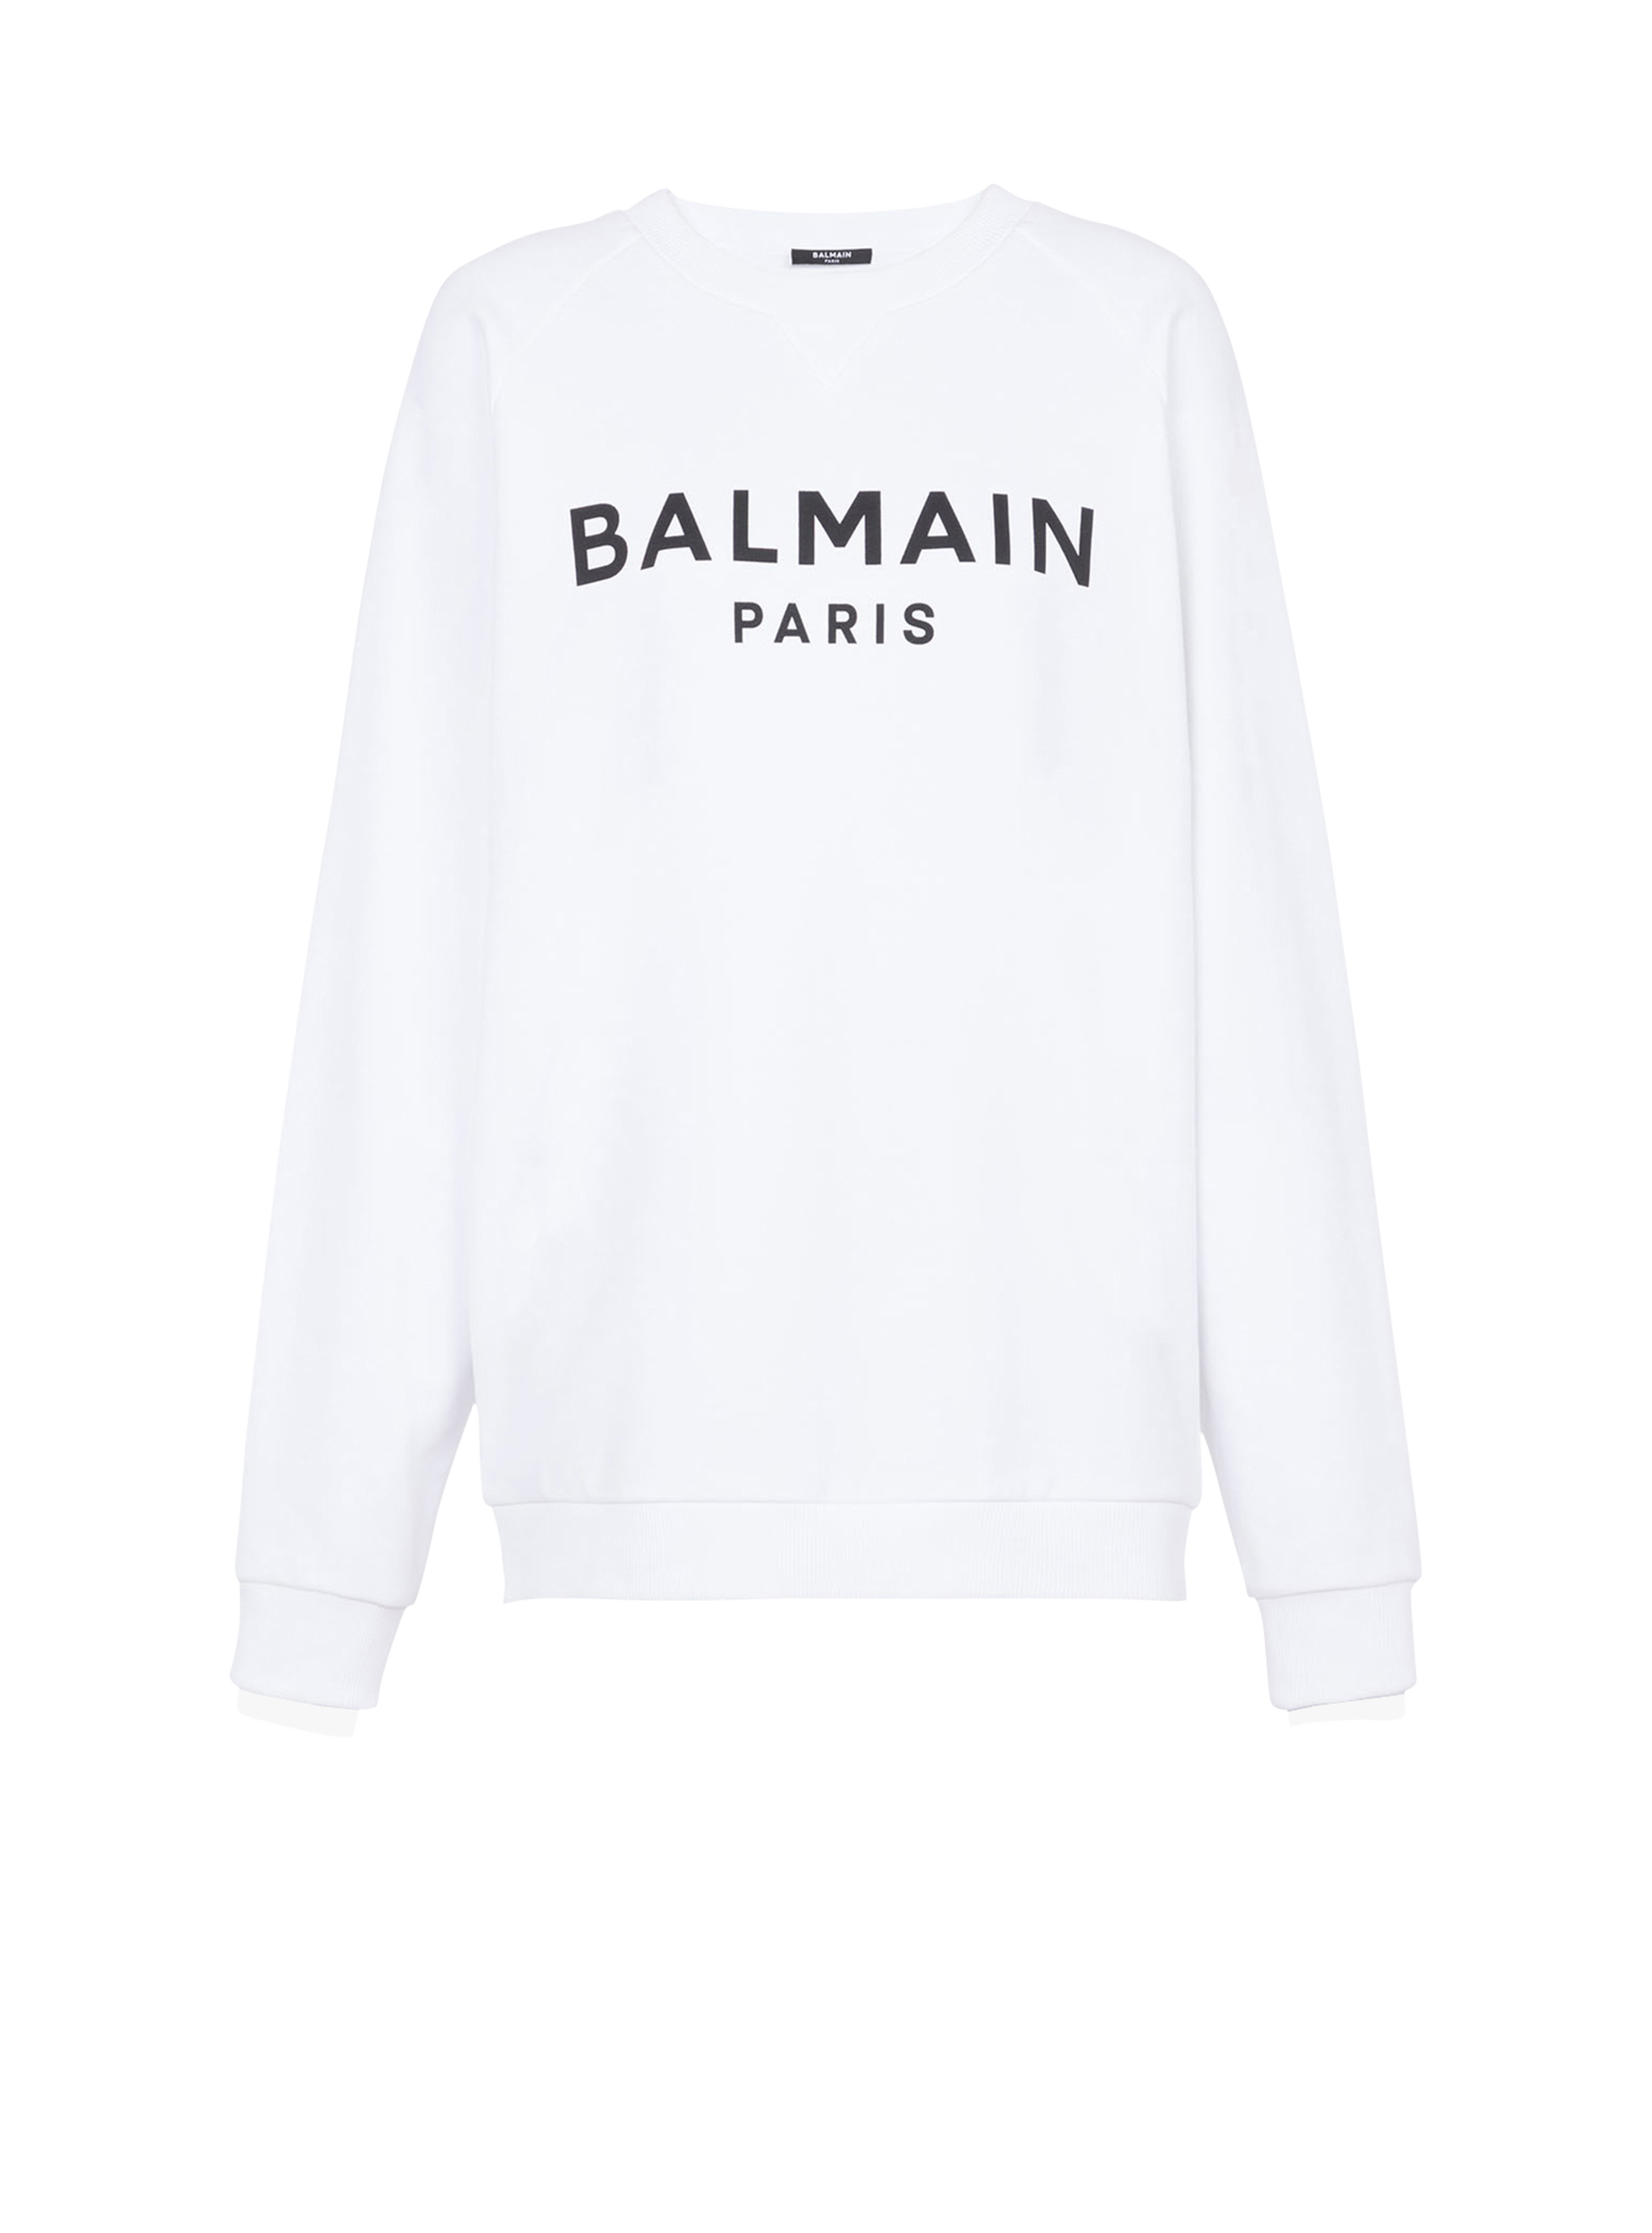 블랙 Balmain Paris 로고 프린트 디테일 코튼 스웻셔츠, white